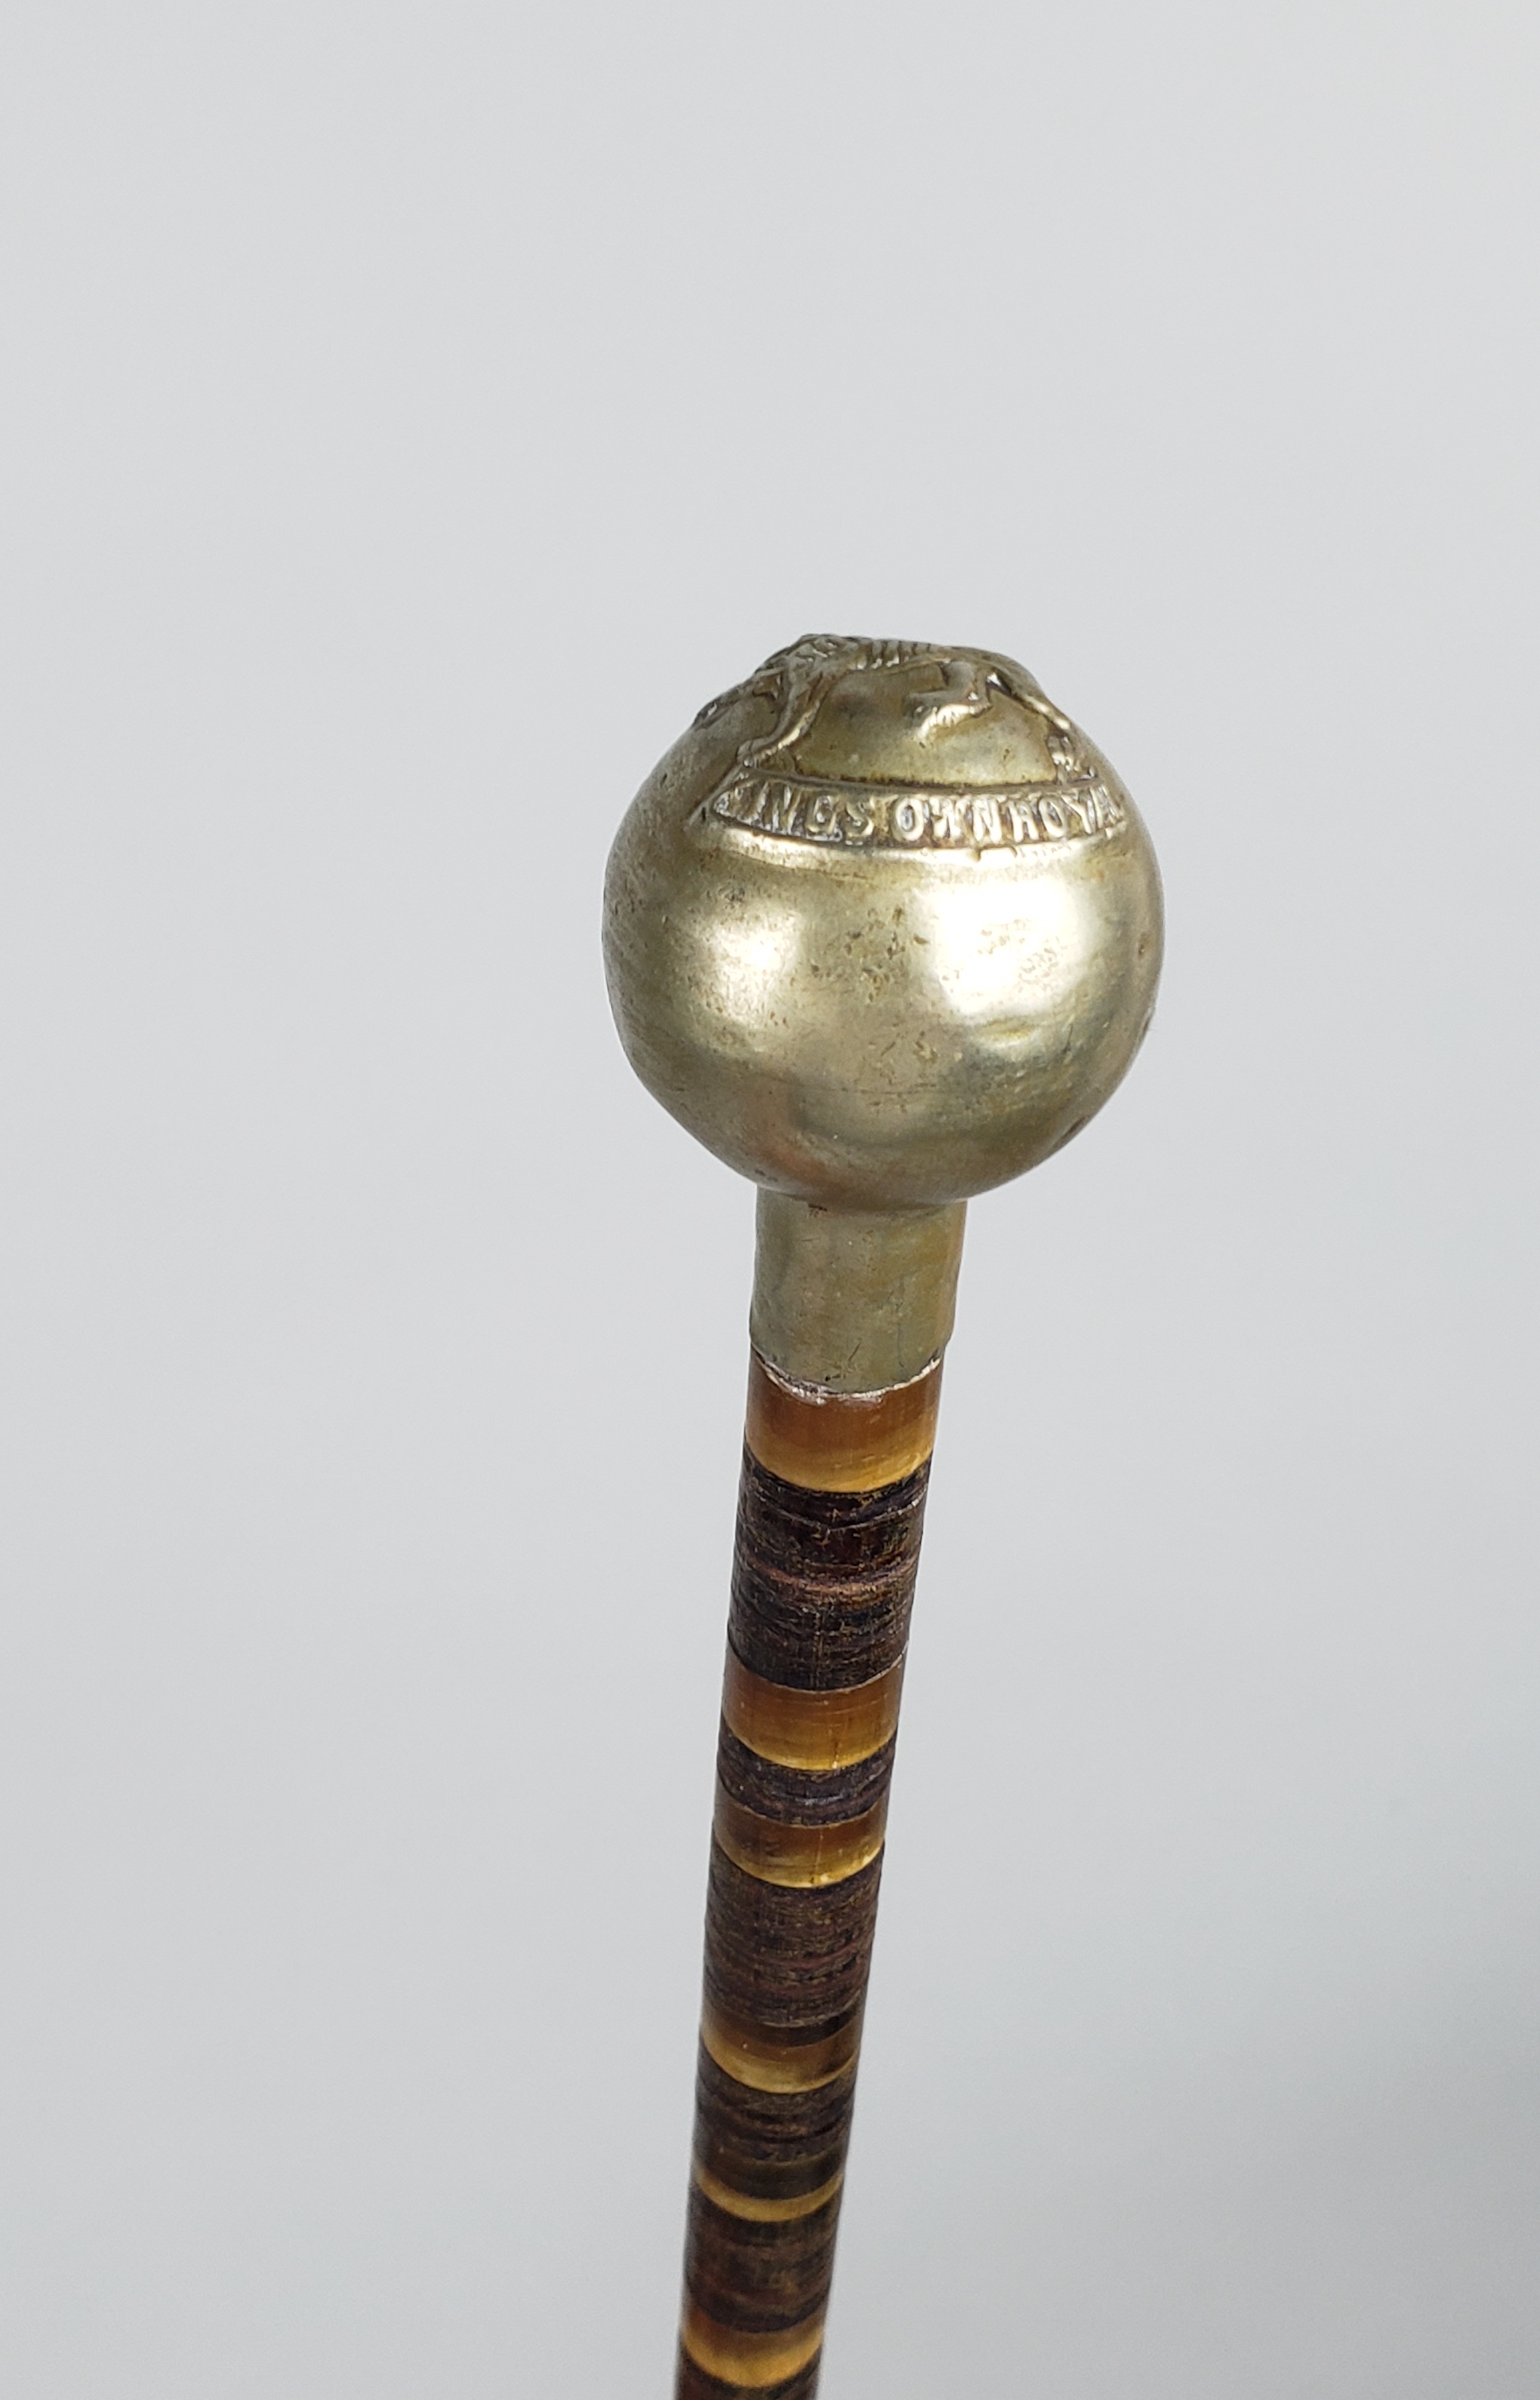 Antique Gentlemans Swagger Stick Pointer, 19th century